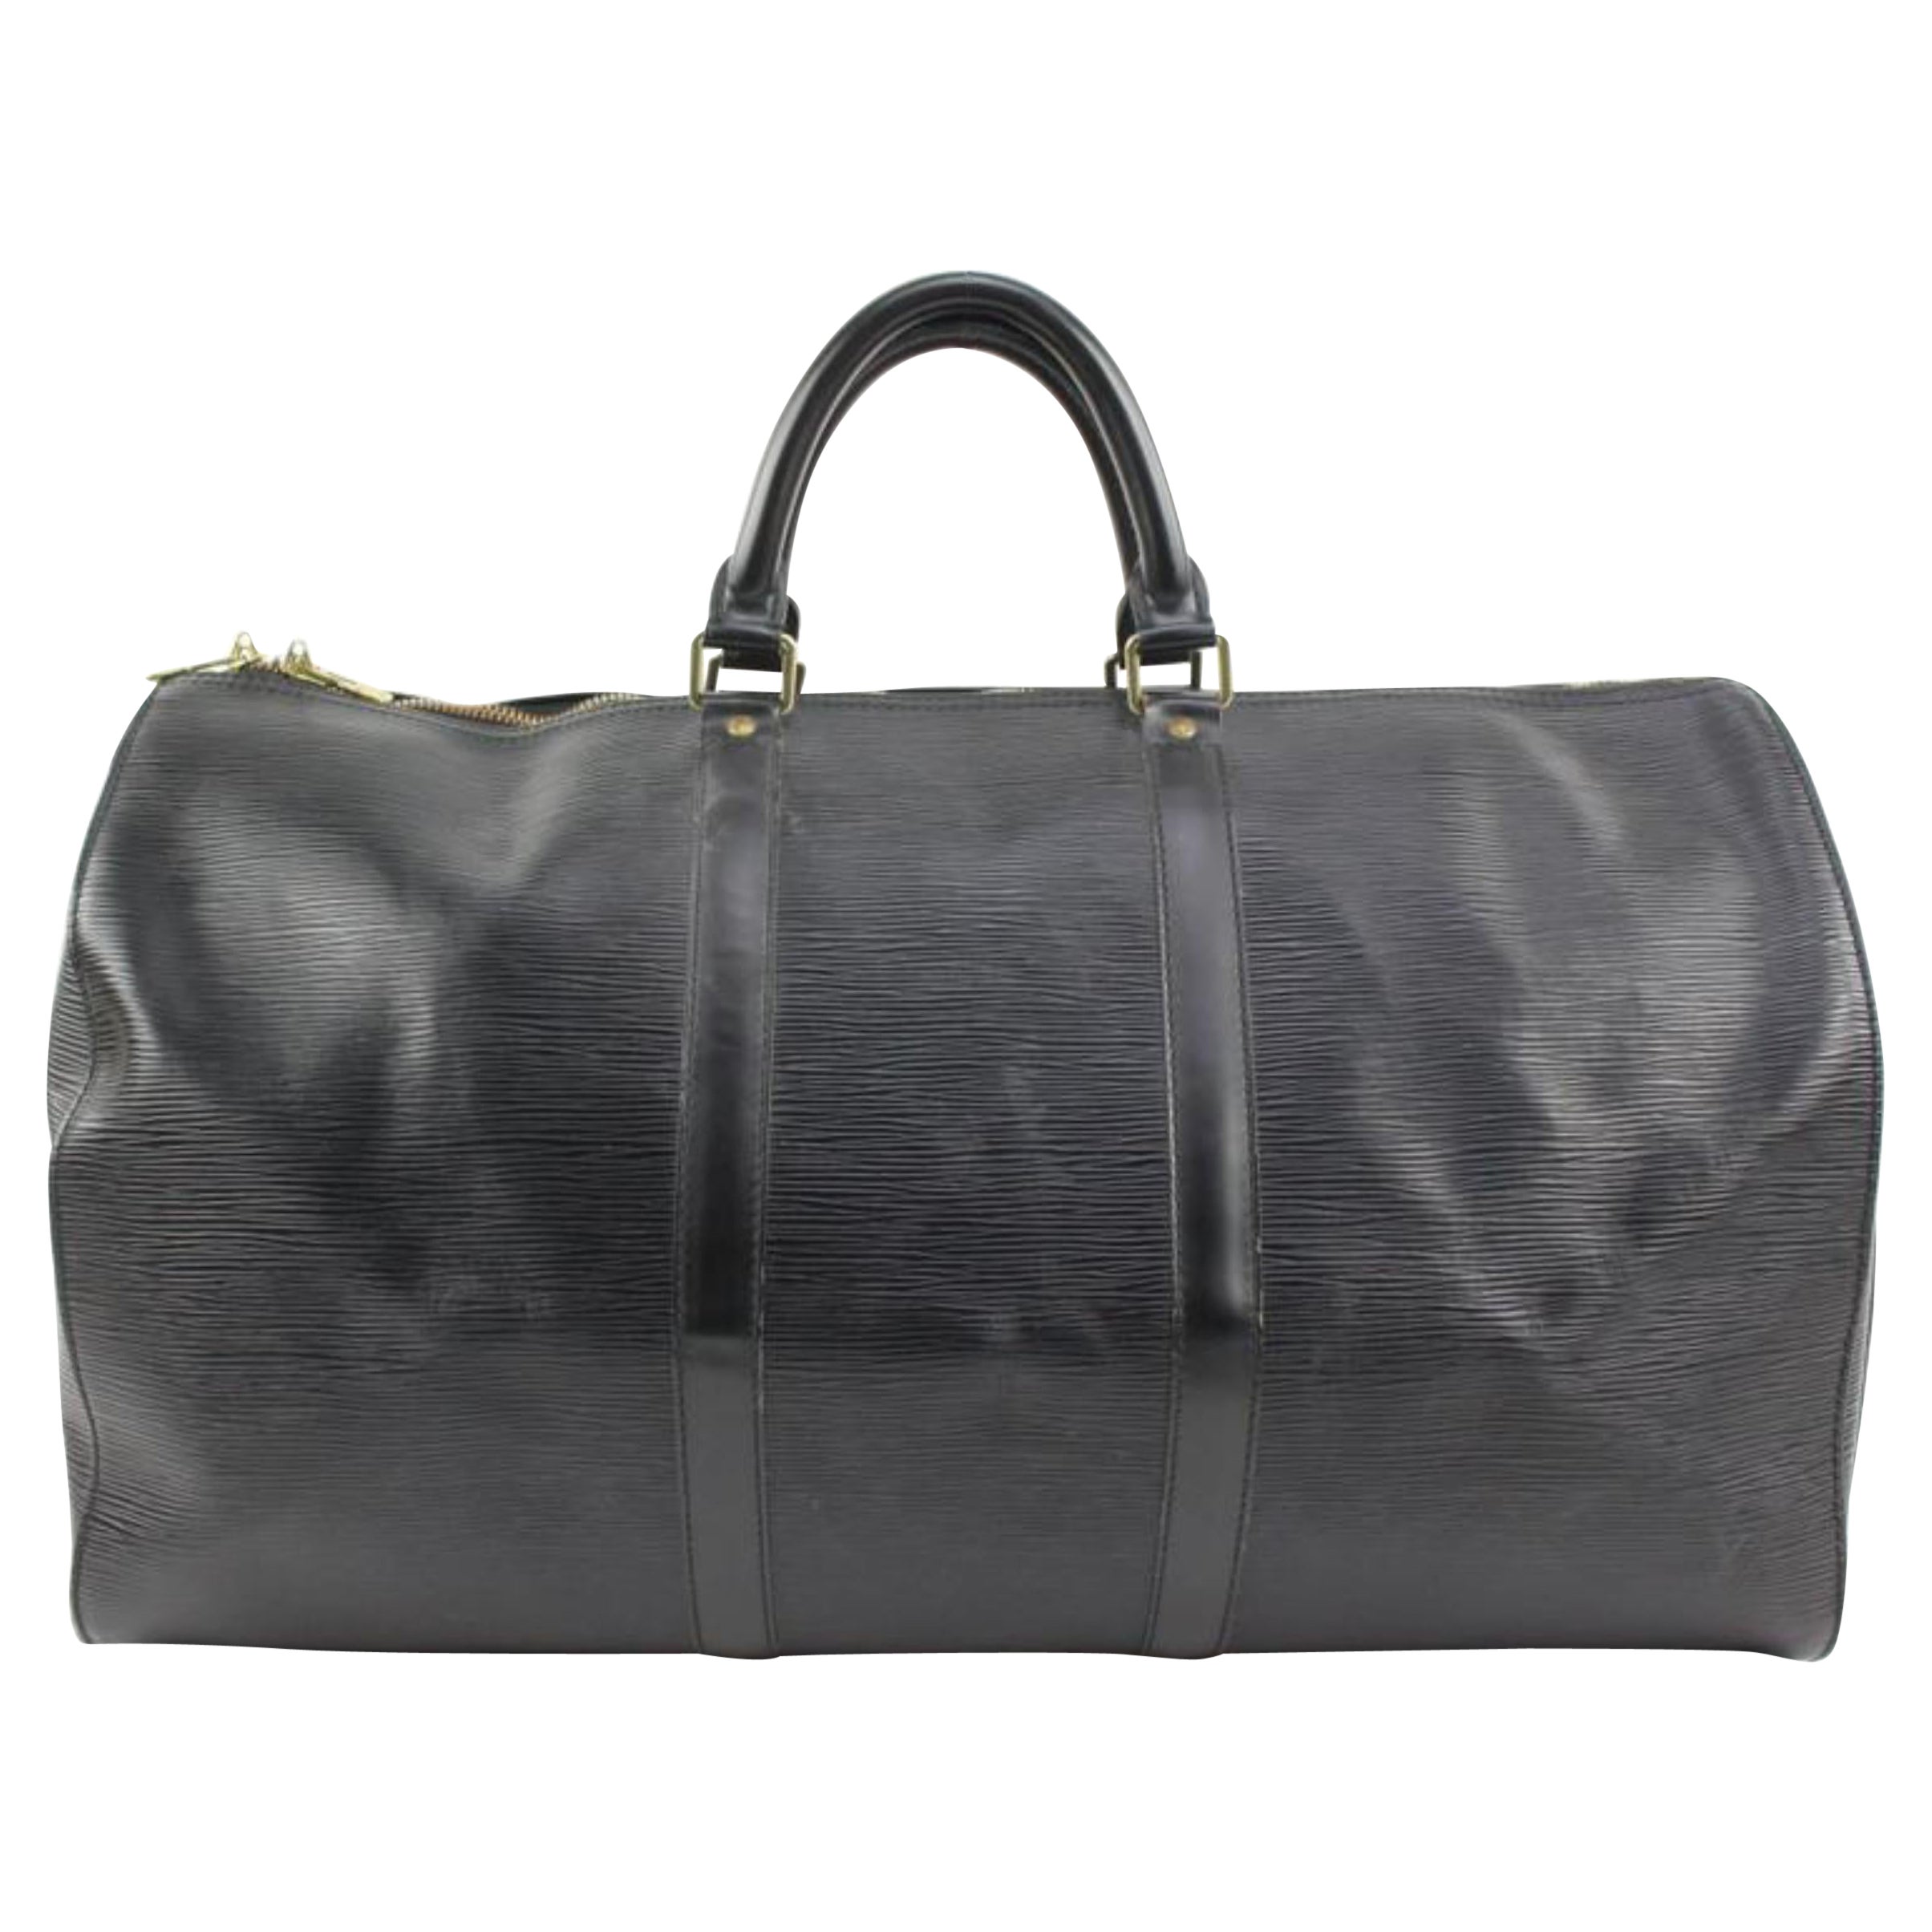 Louis Vuitton Black Epi Leather Noir Keepall 50 Duffle Bag 62lv218s